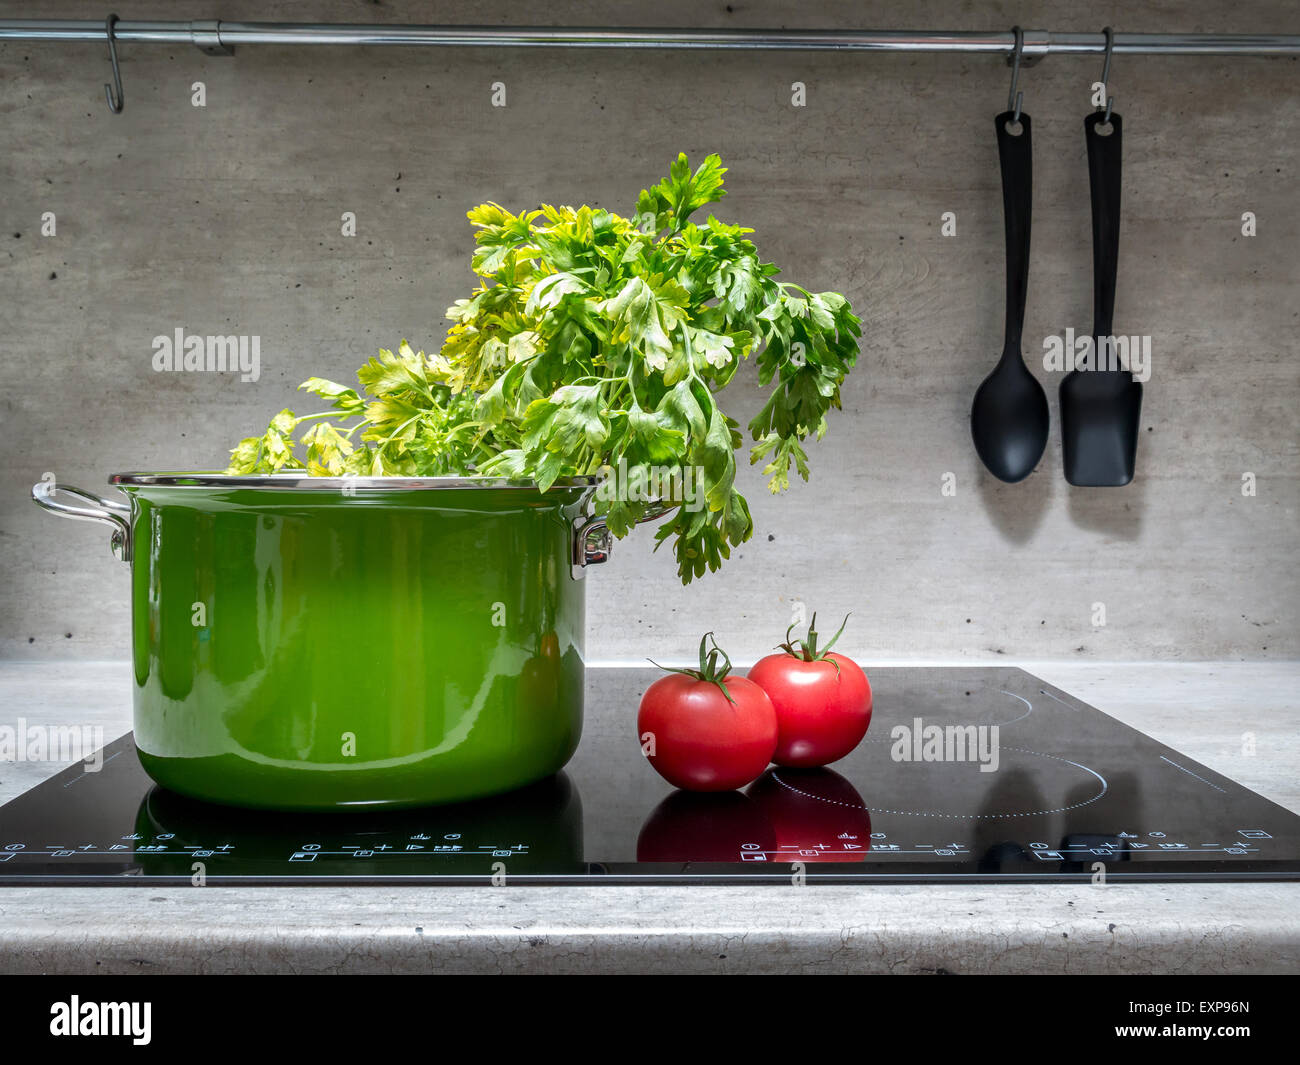 Smalto verde stewpot con prezzemolo e due pomodori nero sul fornello ad induzione Foto Stock